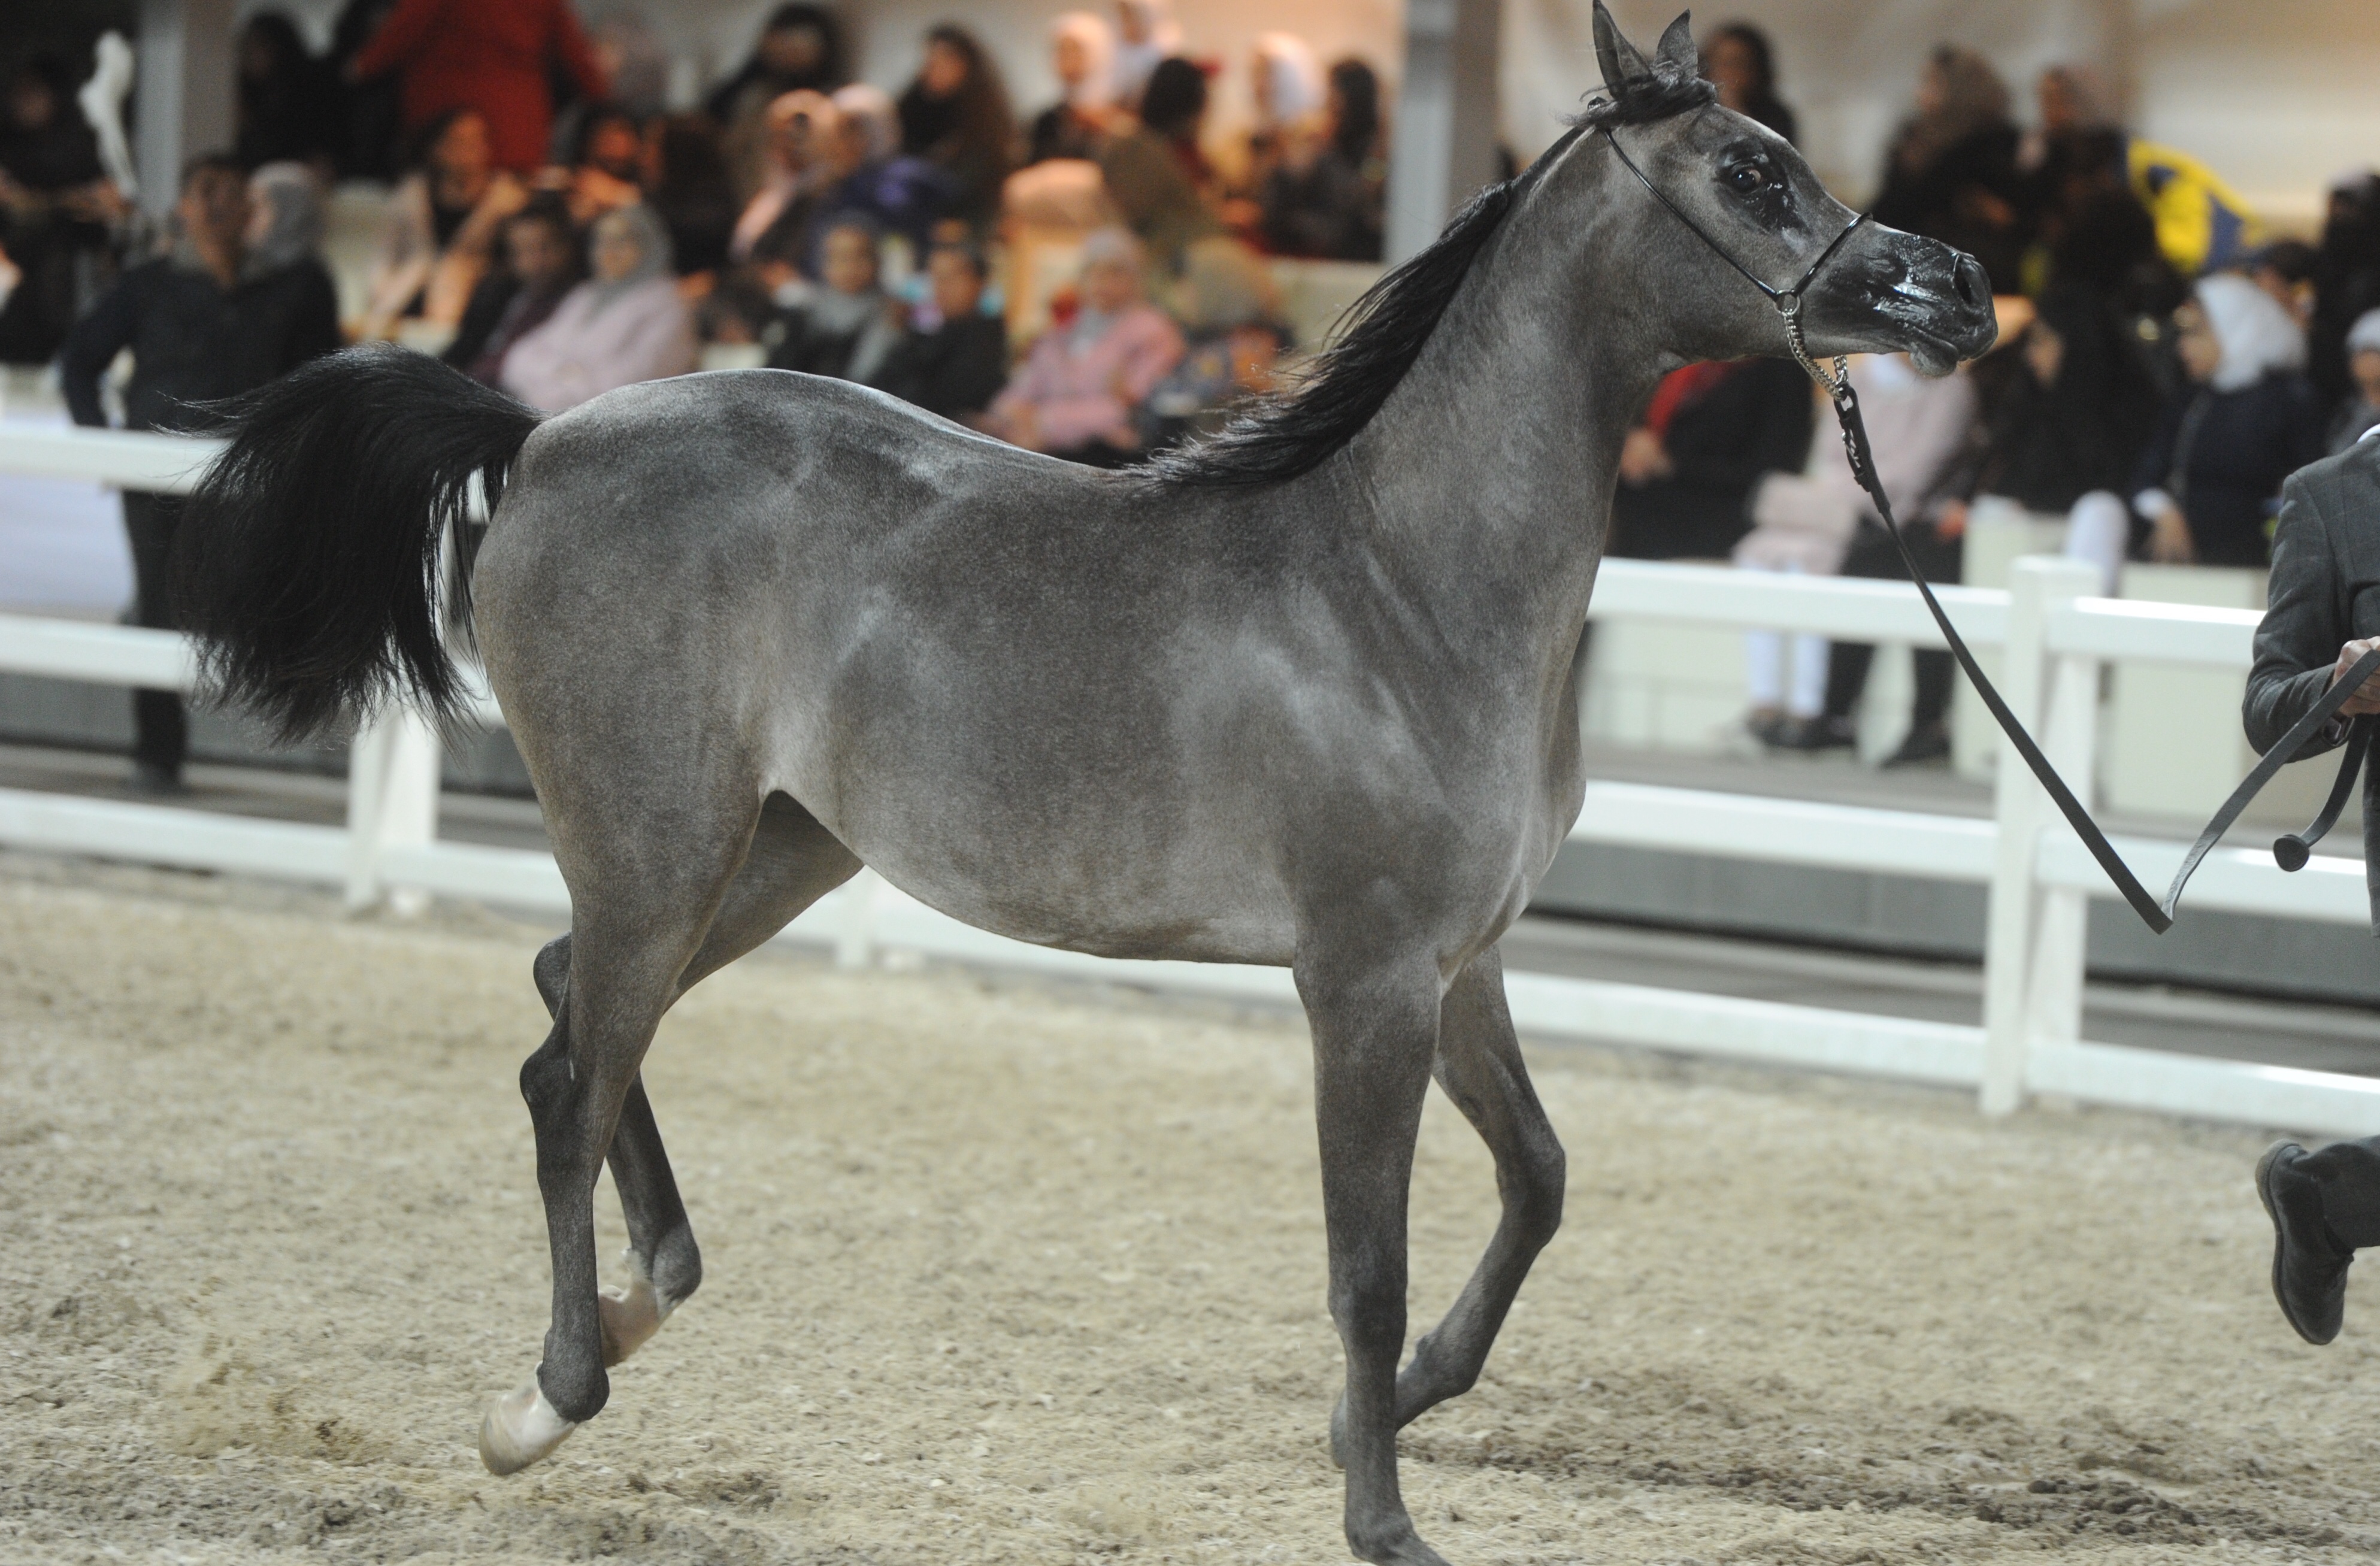 جانب من عرض الخيول المشاركة ضمن البطولة الدولية السابعة لجمال الخيل العربية